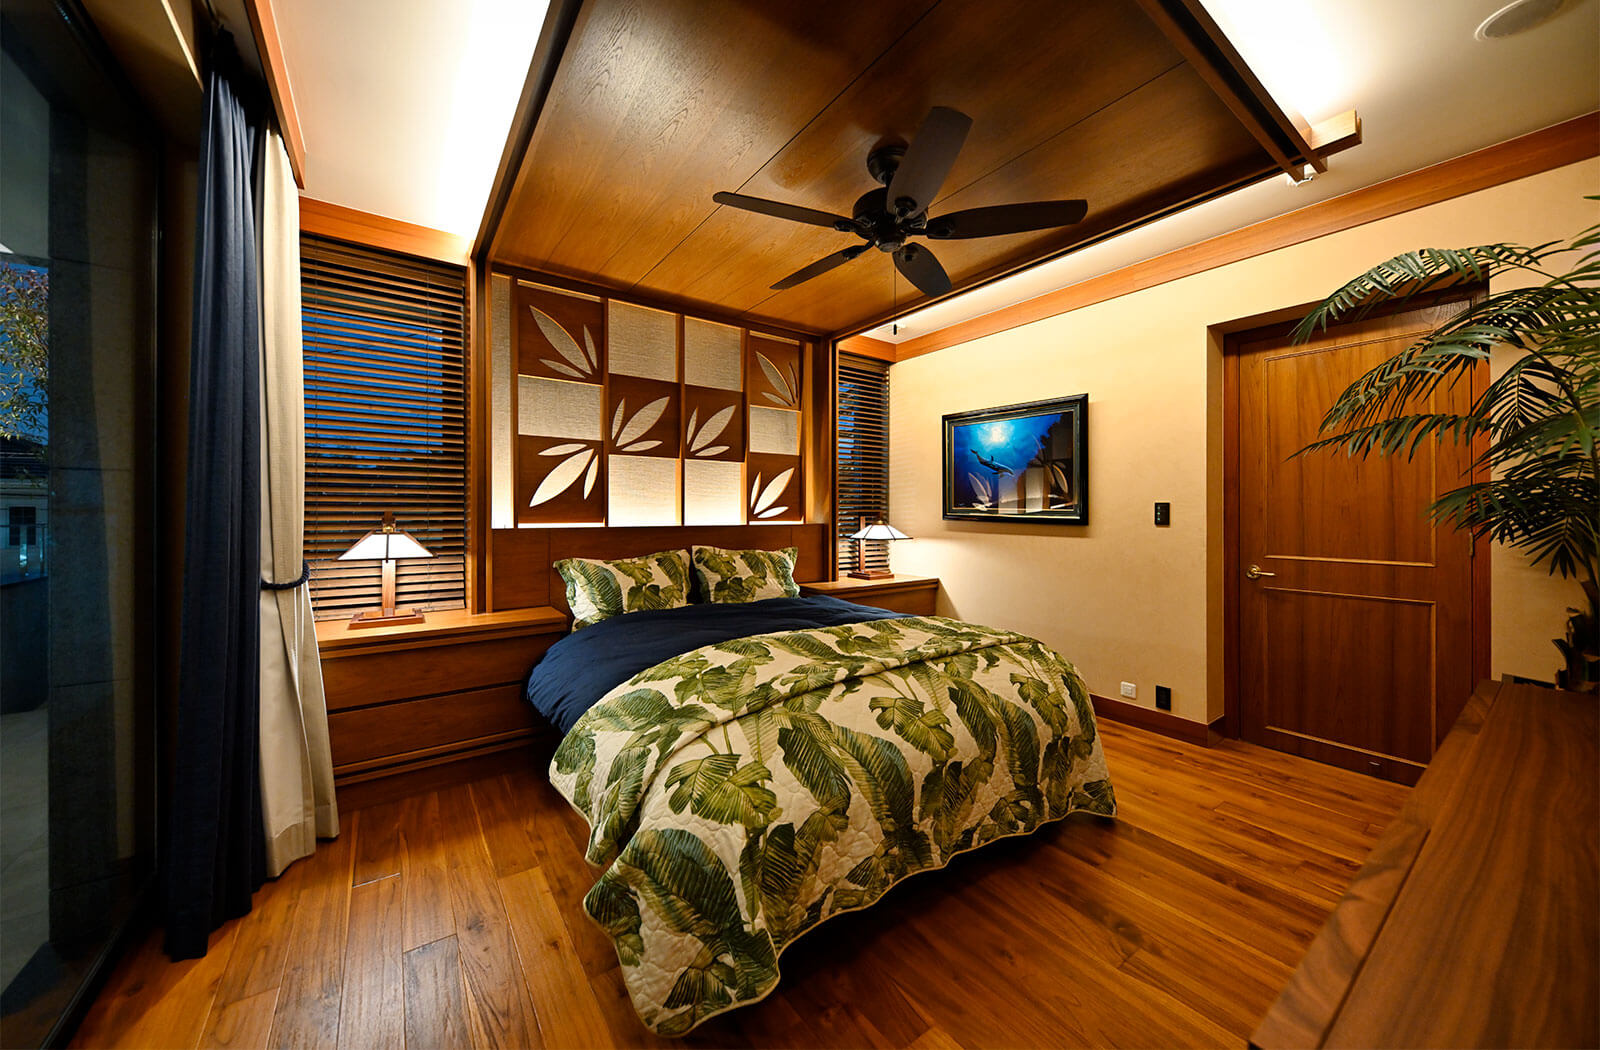 高級住宅│ハワイアンテイストな寝室・ベッドルームのインテリアコーディネート